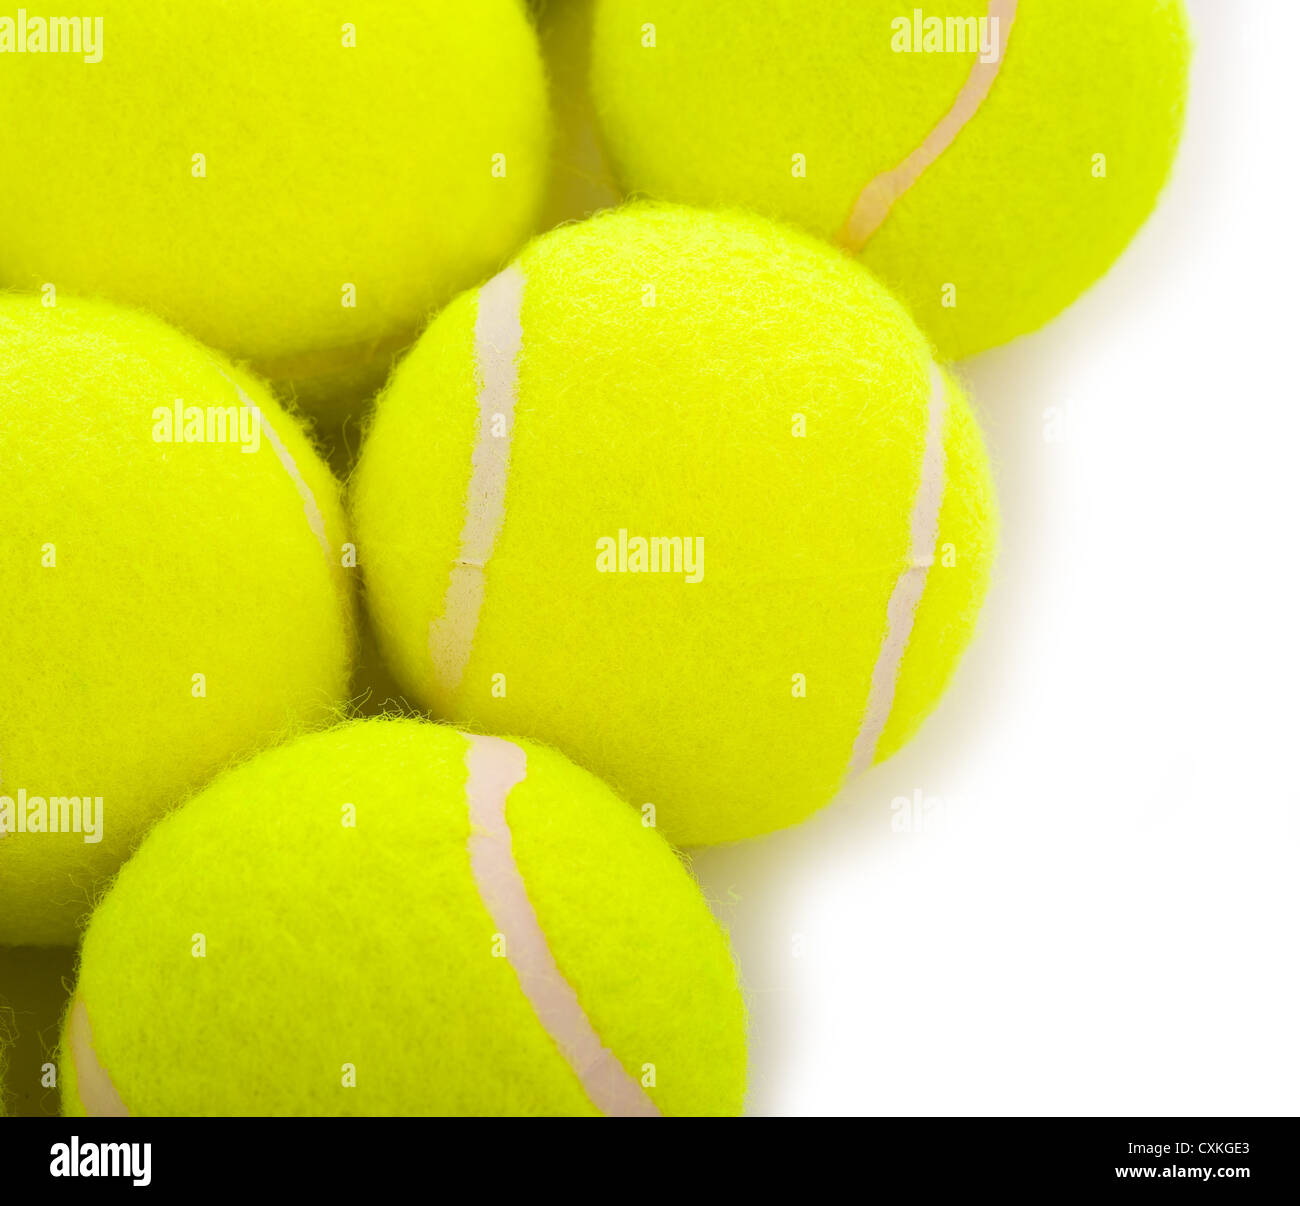 Diverse le palline da tennis su uno sfondo bianco con spazio di copia Foto Stock